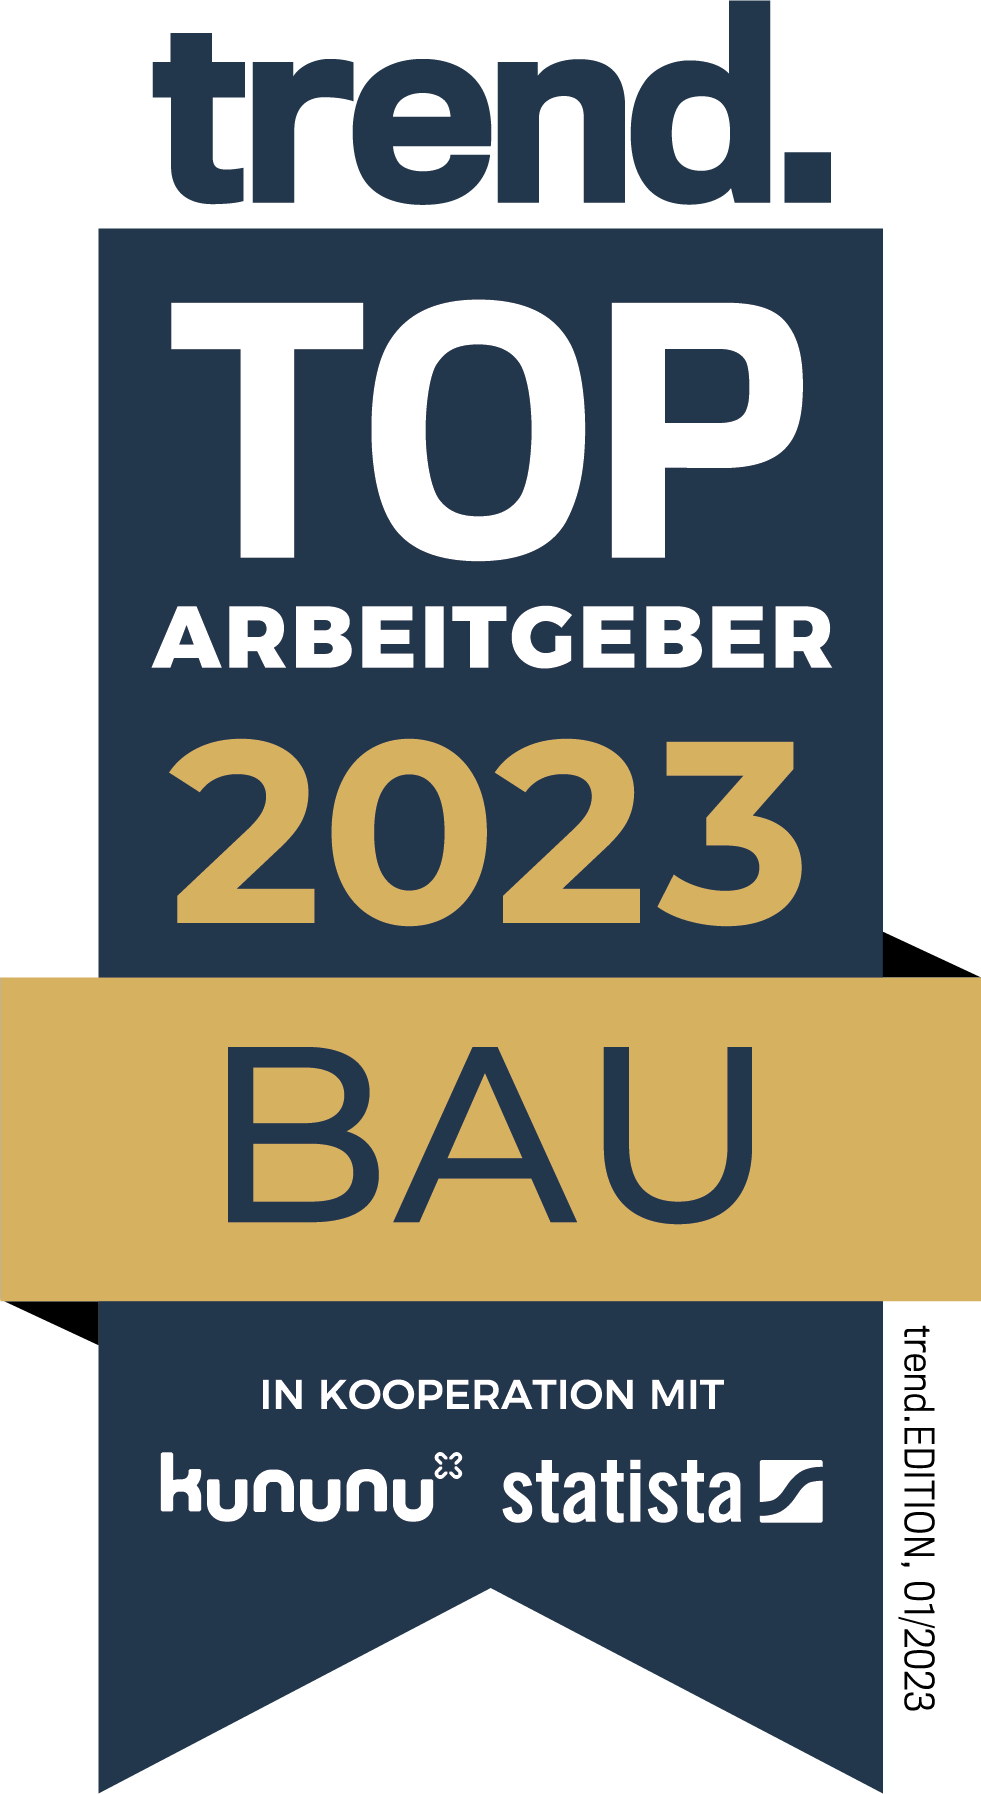 Top Arbeitgeber_Bau 2023